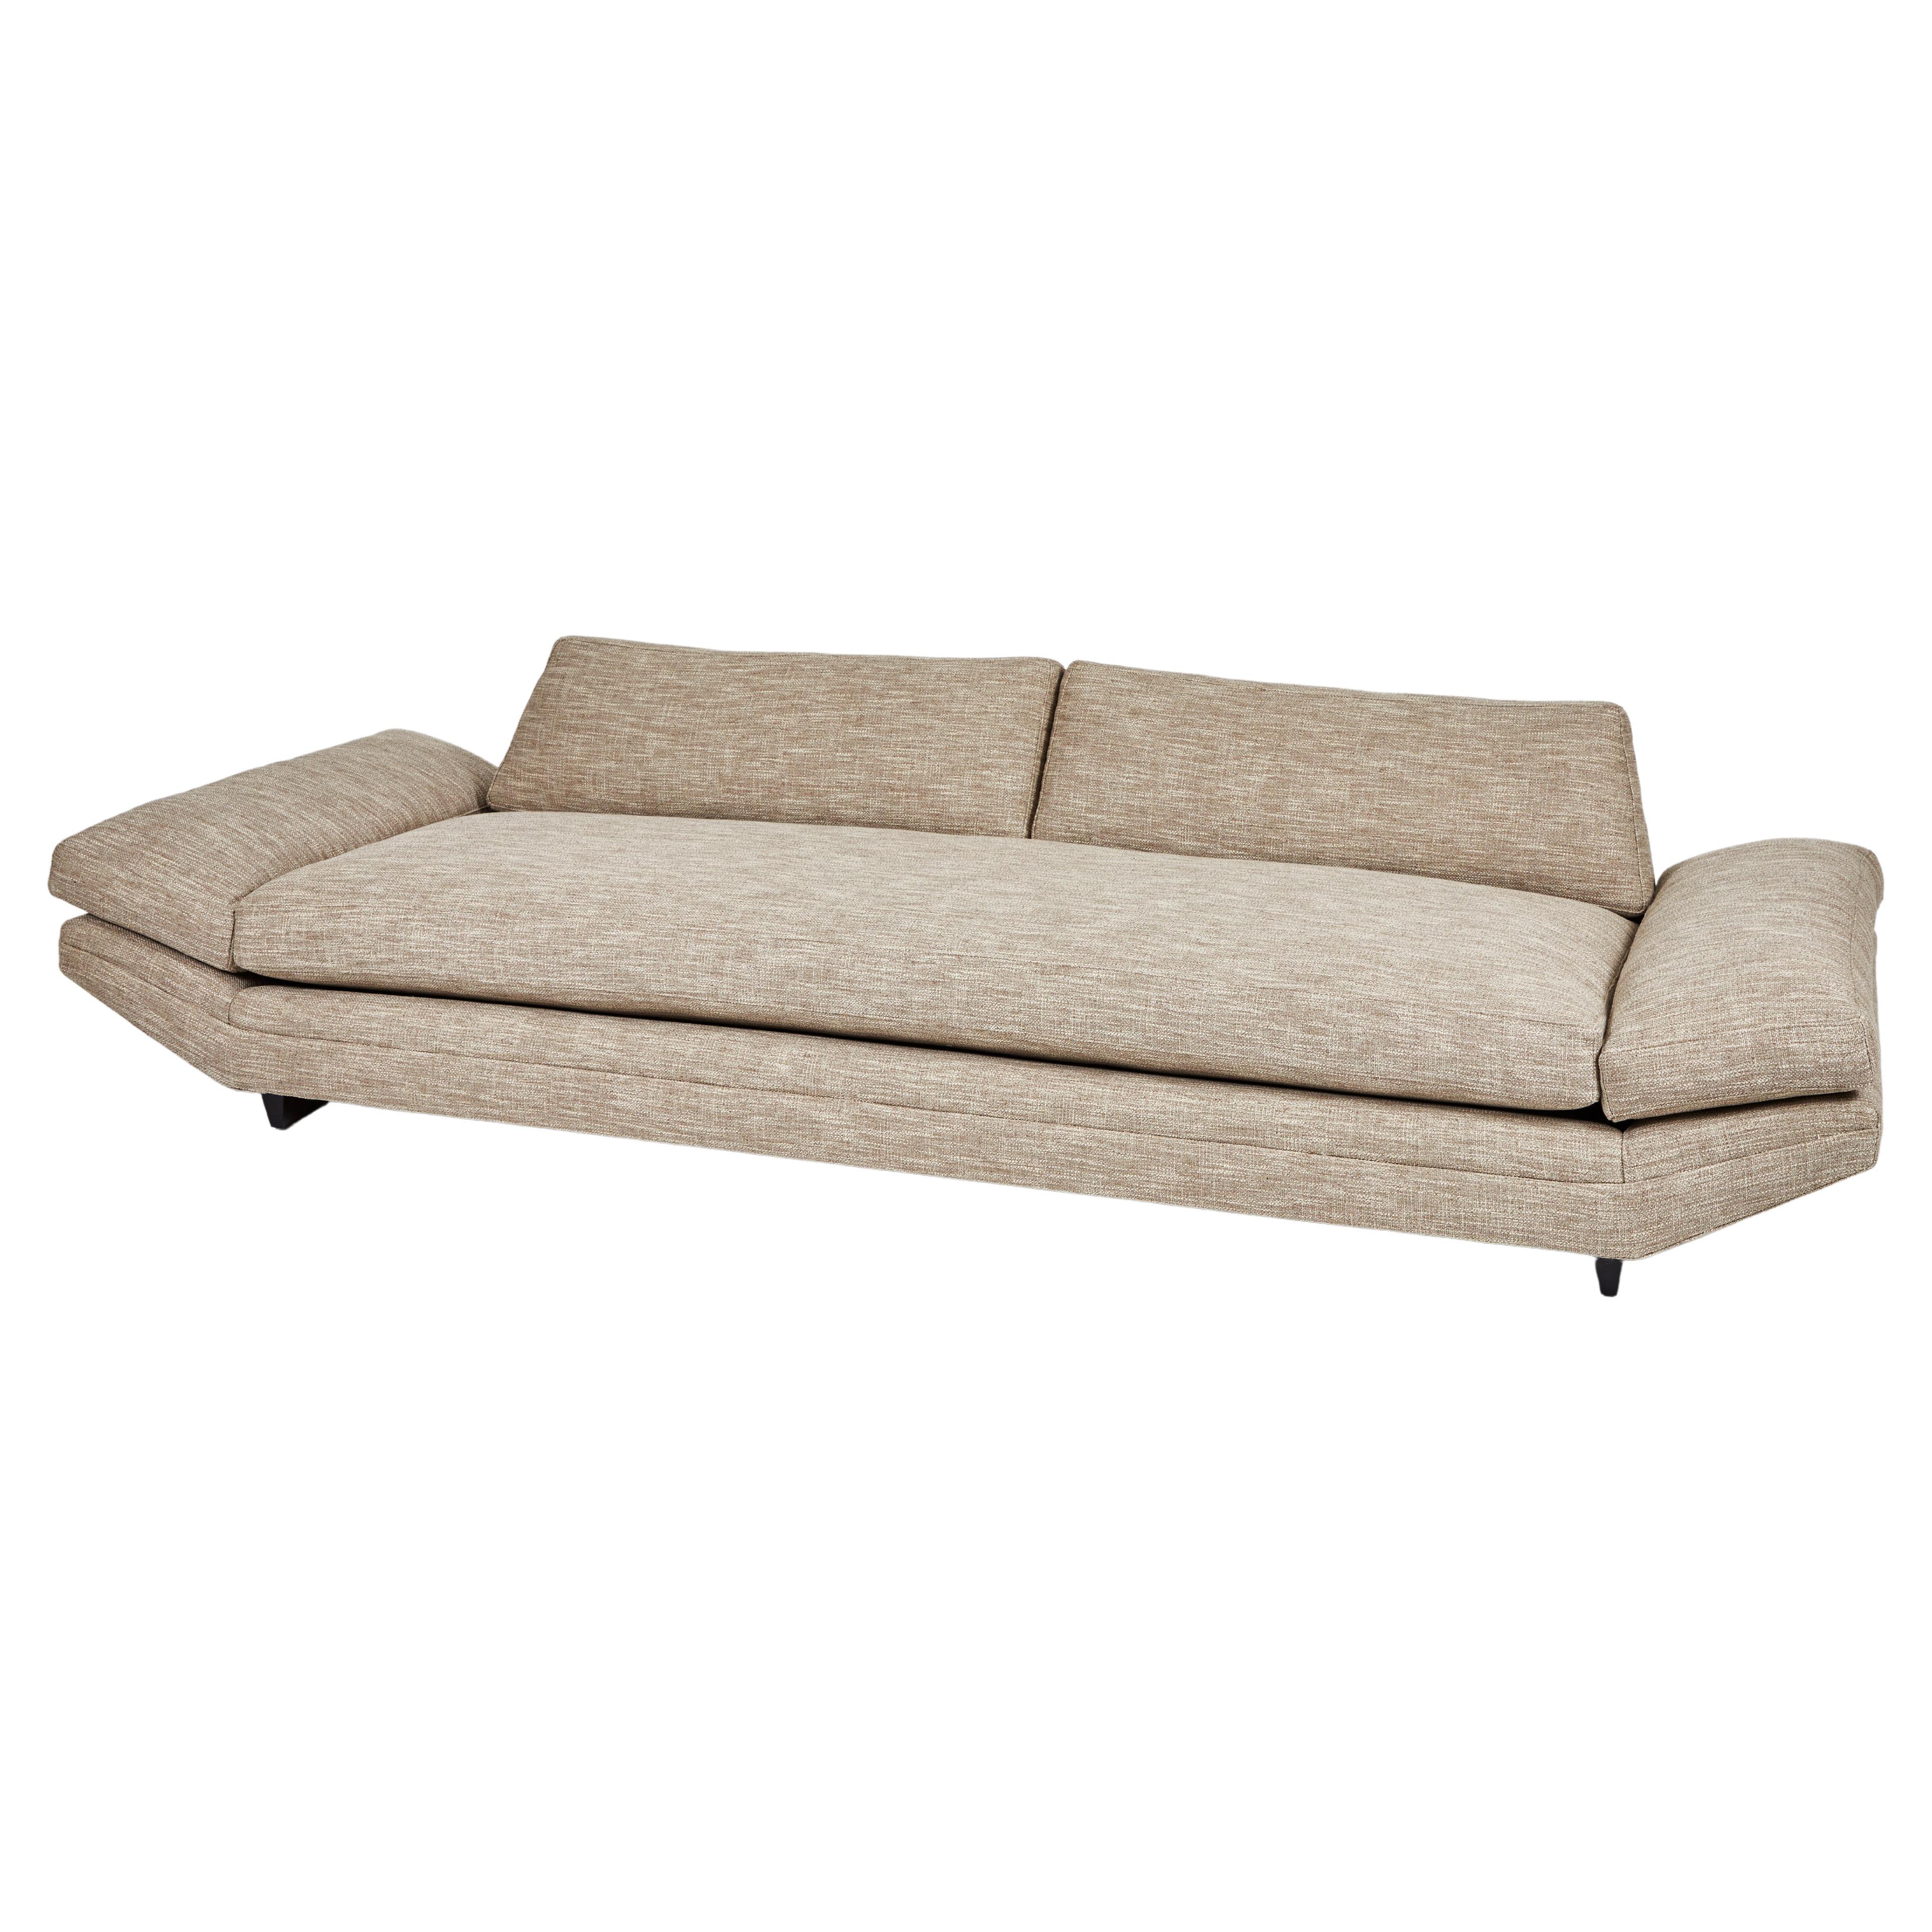 Sofa Designed by John Keal for Brown Saltman